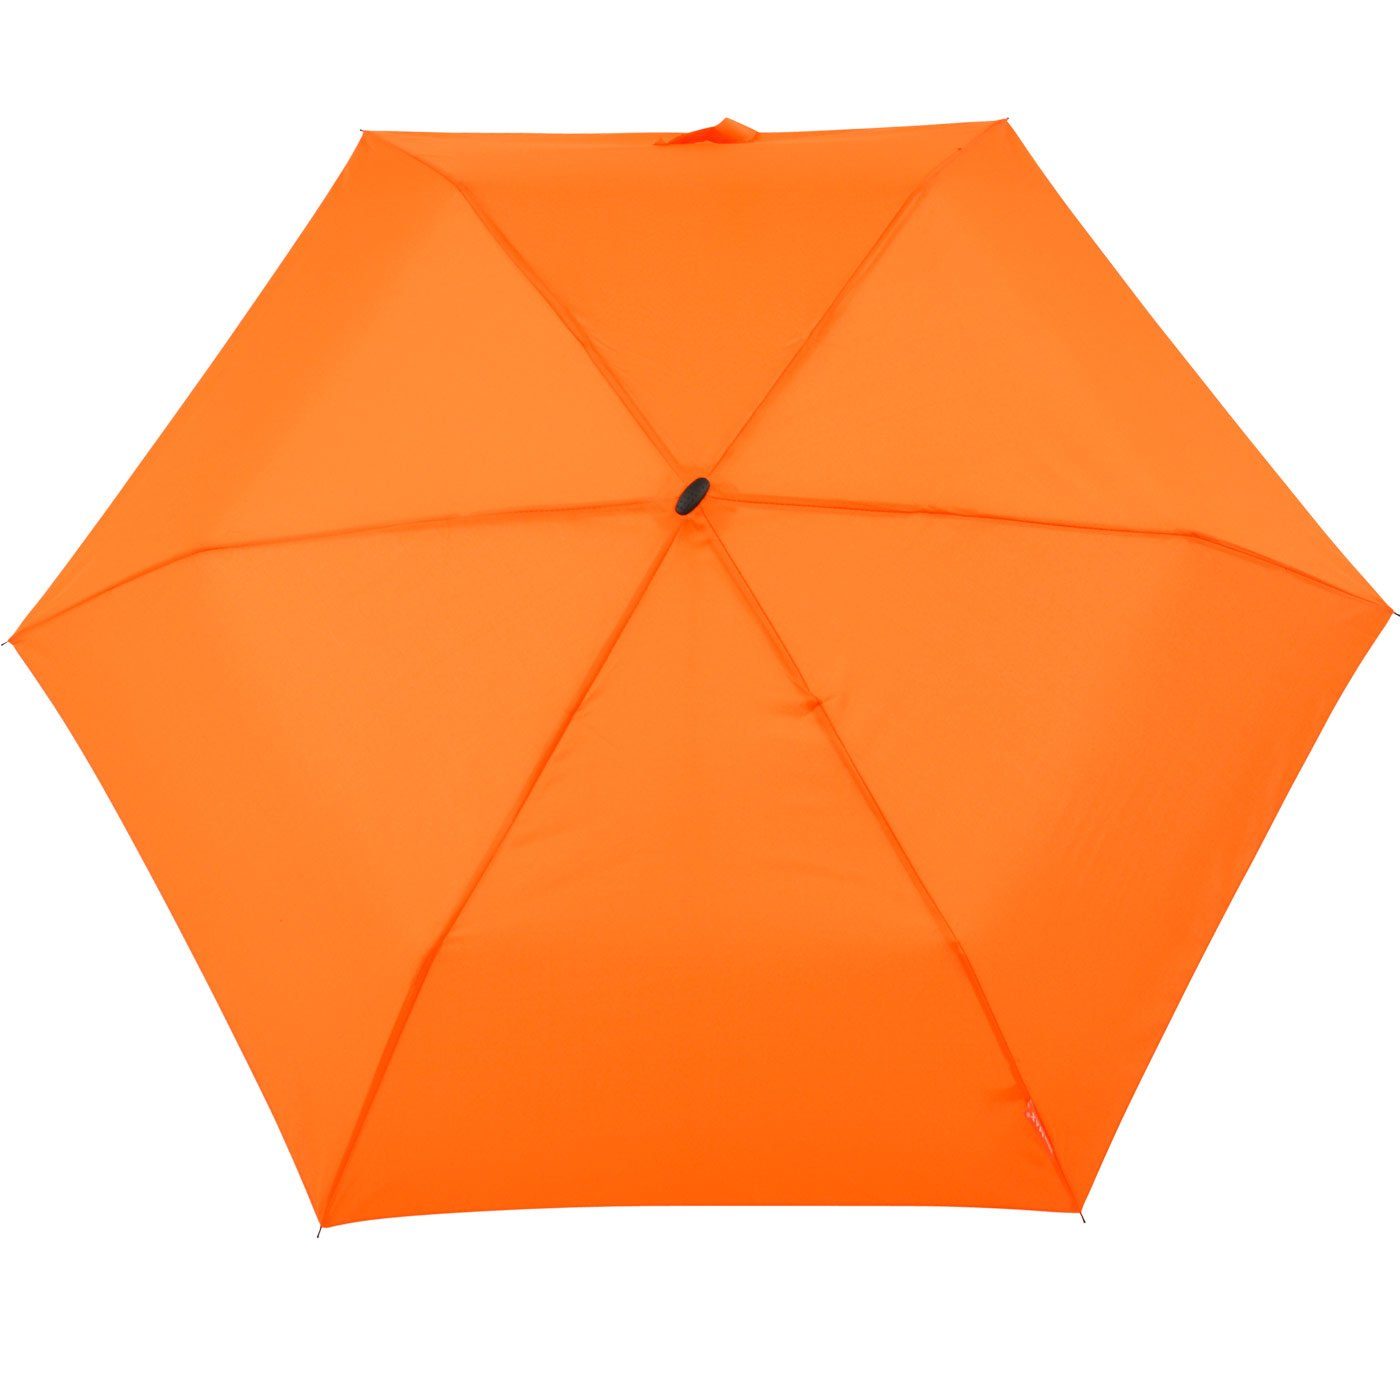 perfekt Impliva leichter Reisegepäck miniMAX® orange Taschenregenschirm flacher für Schirm, Flat das